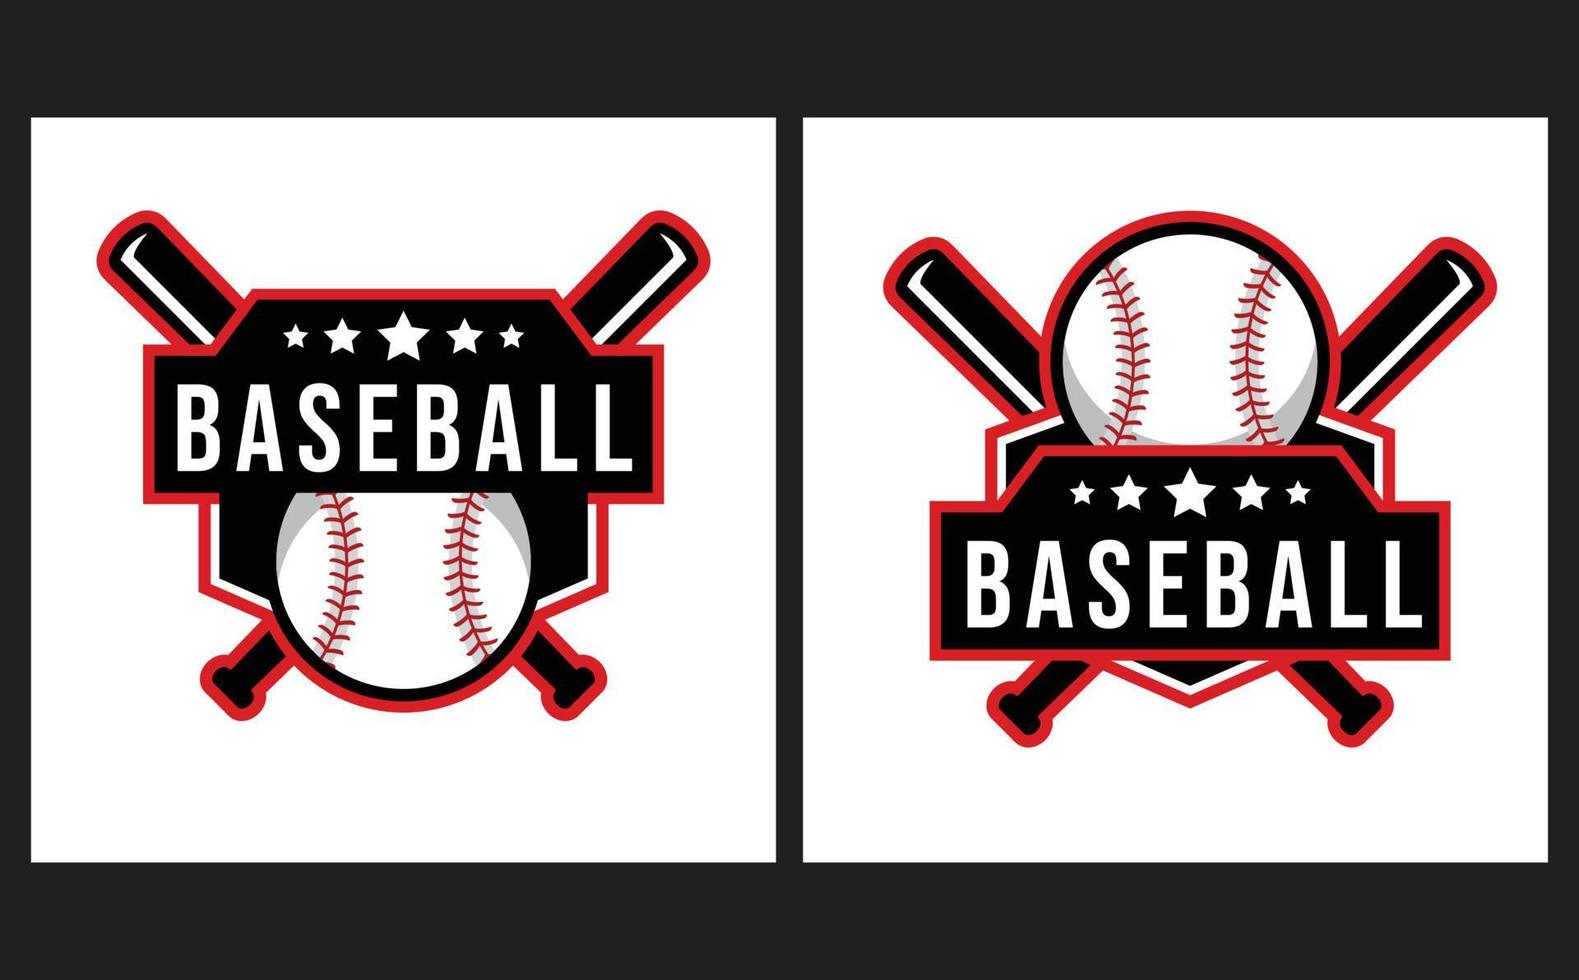 modelo de logotipo de beisebol com estilo de emblema. adequado para emblemas de clubes esportivos, competições, campeonatos, torneios, designs de camisetas etc vetor